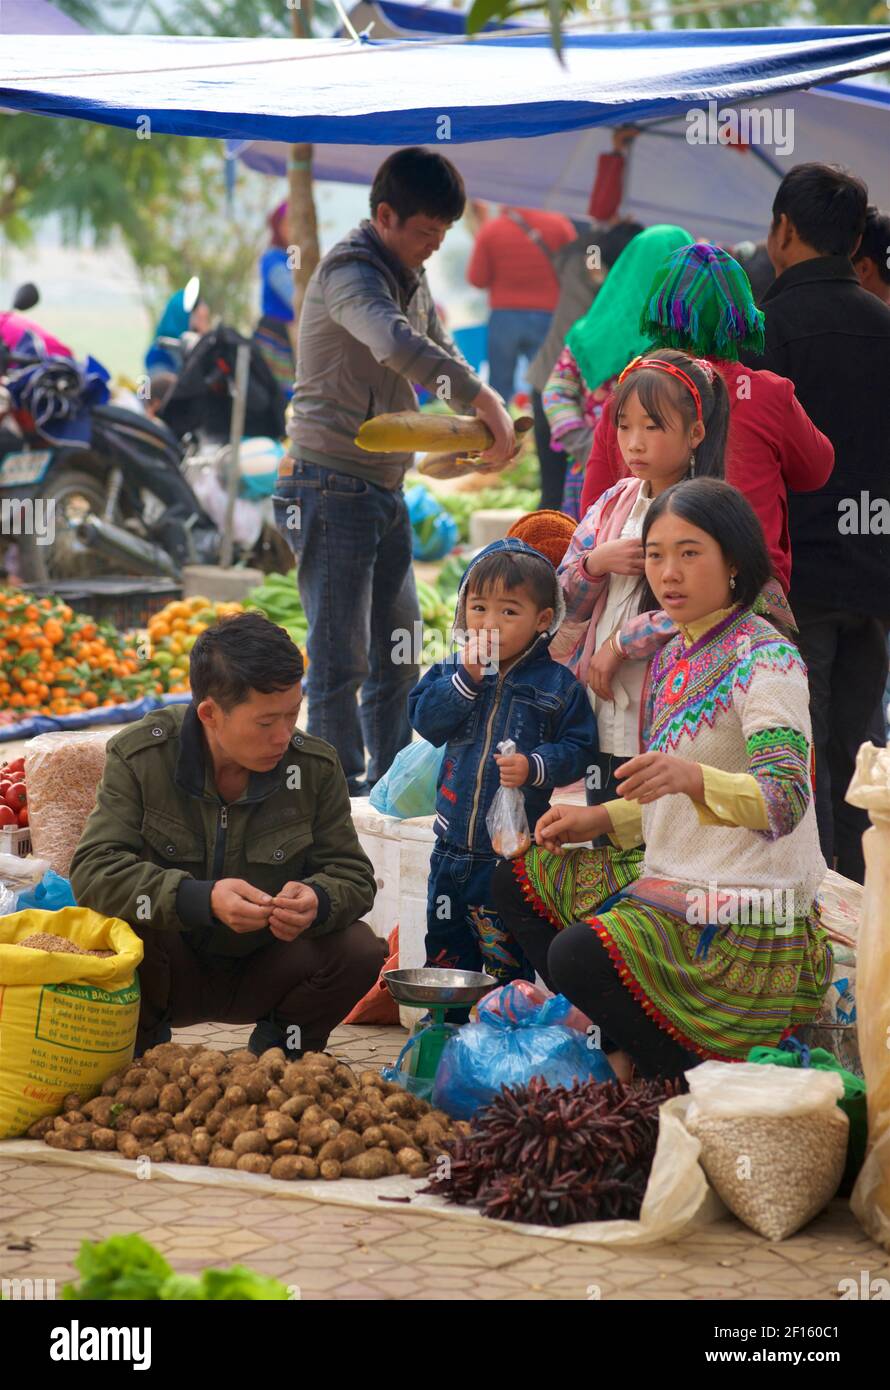 Blume Hmong Familie in einer Mischung aus traditionellen Stil und moderne Kleidung. BAC Ha Markt, Lao Cai Provinz, Vietnam. Stockfoto